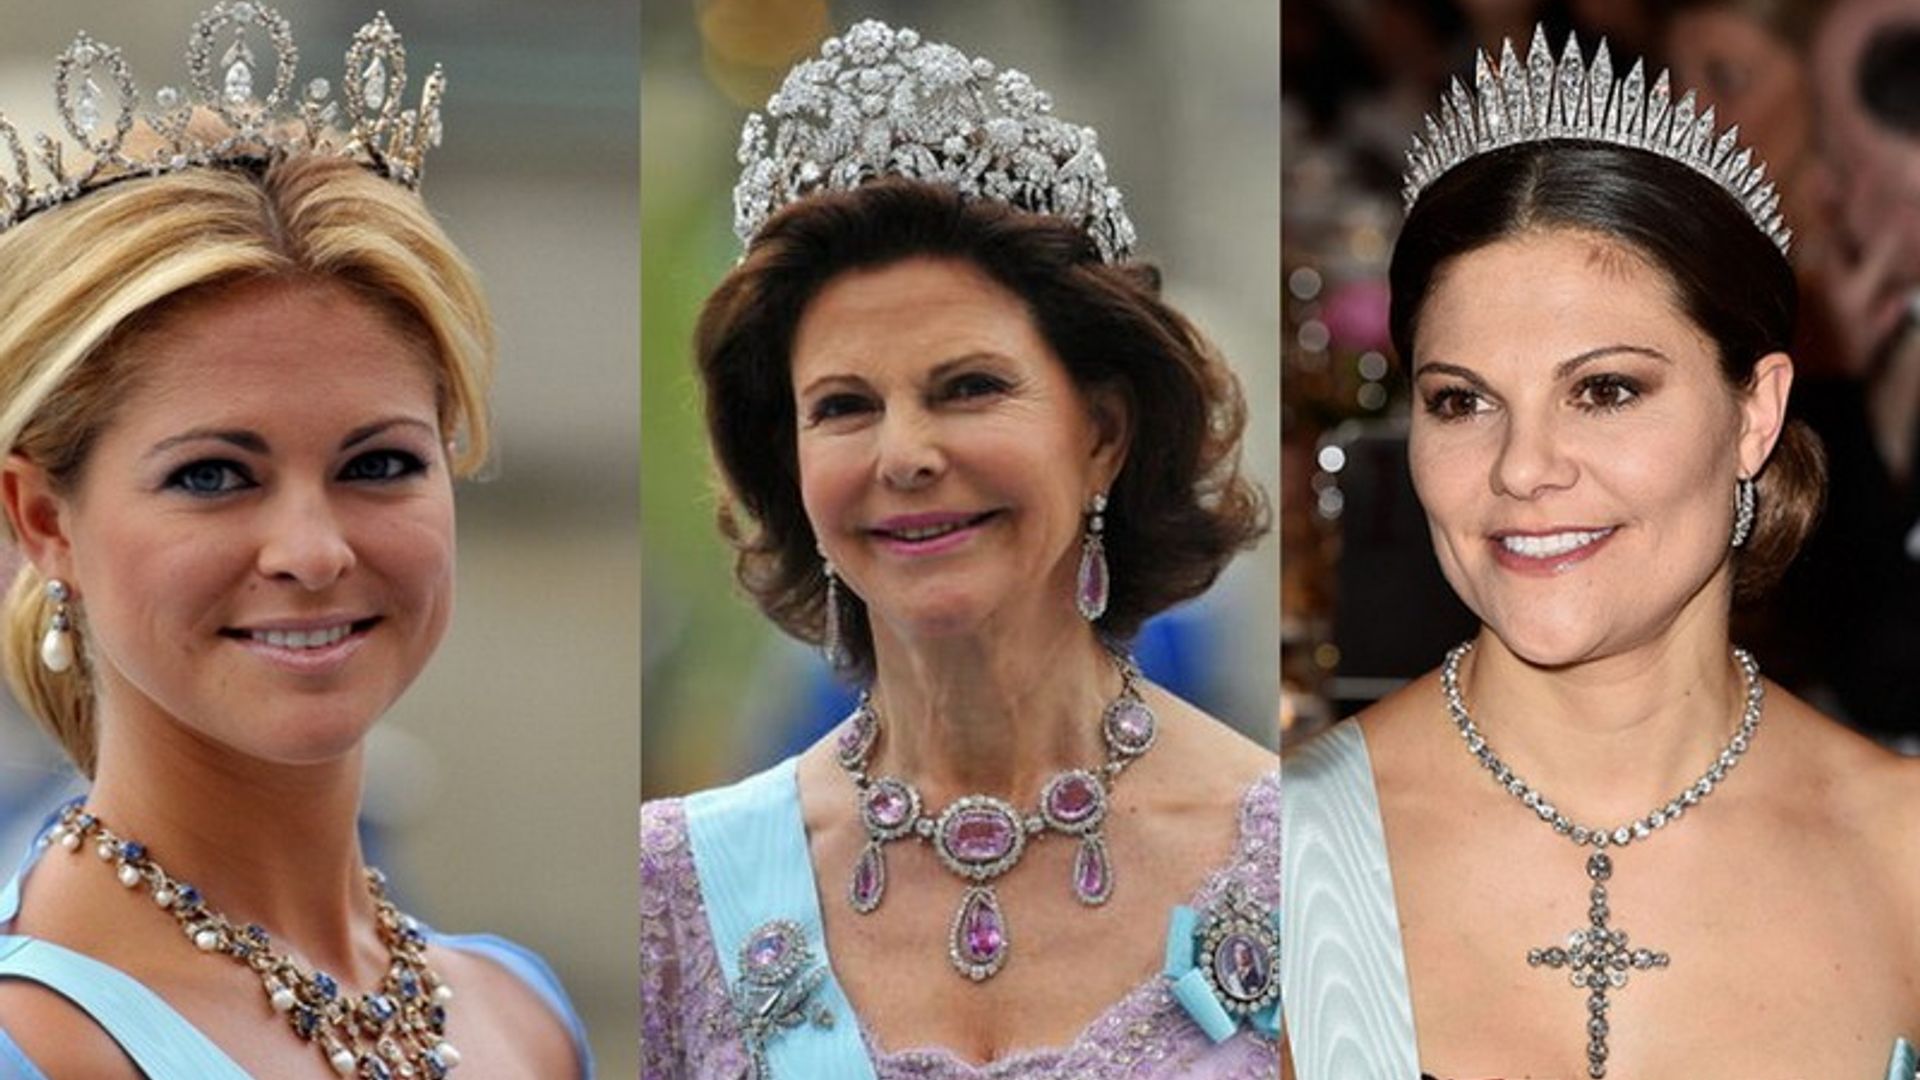 Swedish royal wedding: Which tiara will Sofia Hellqvist wear?